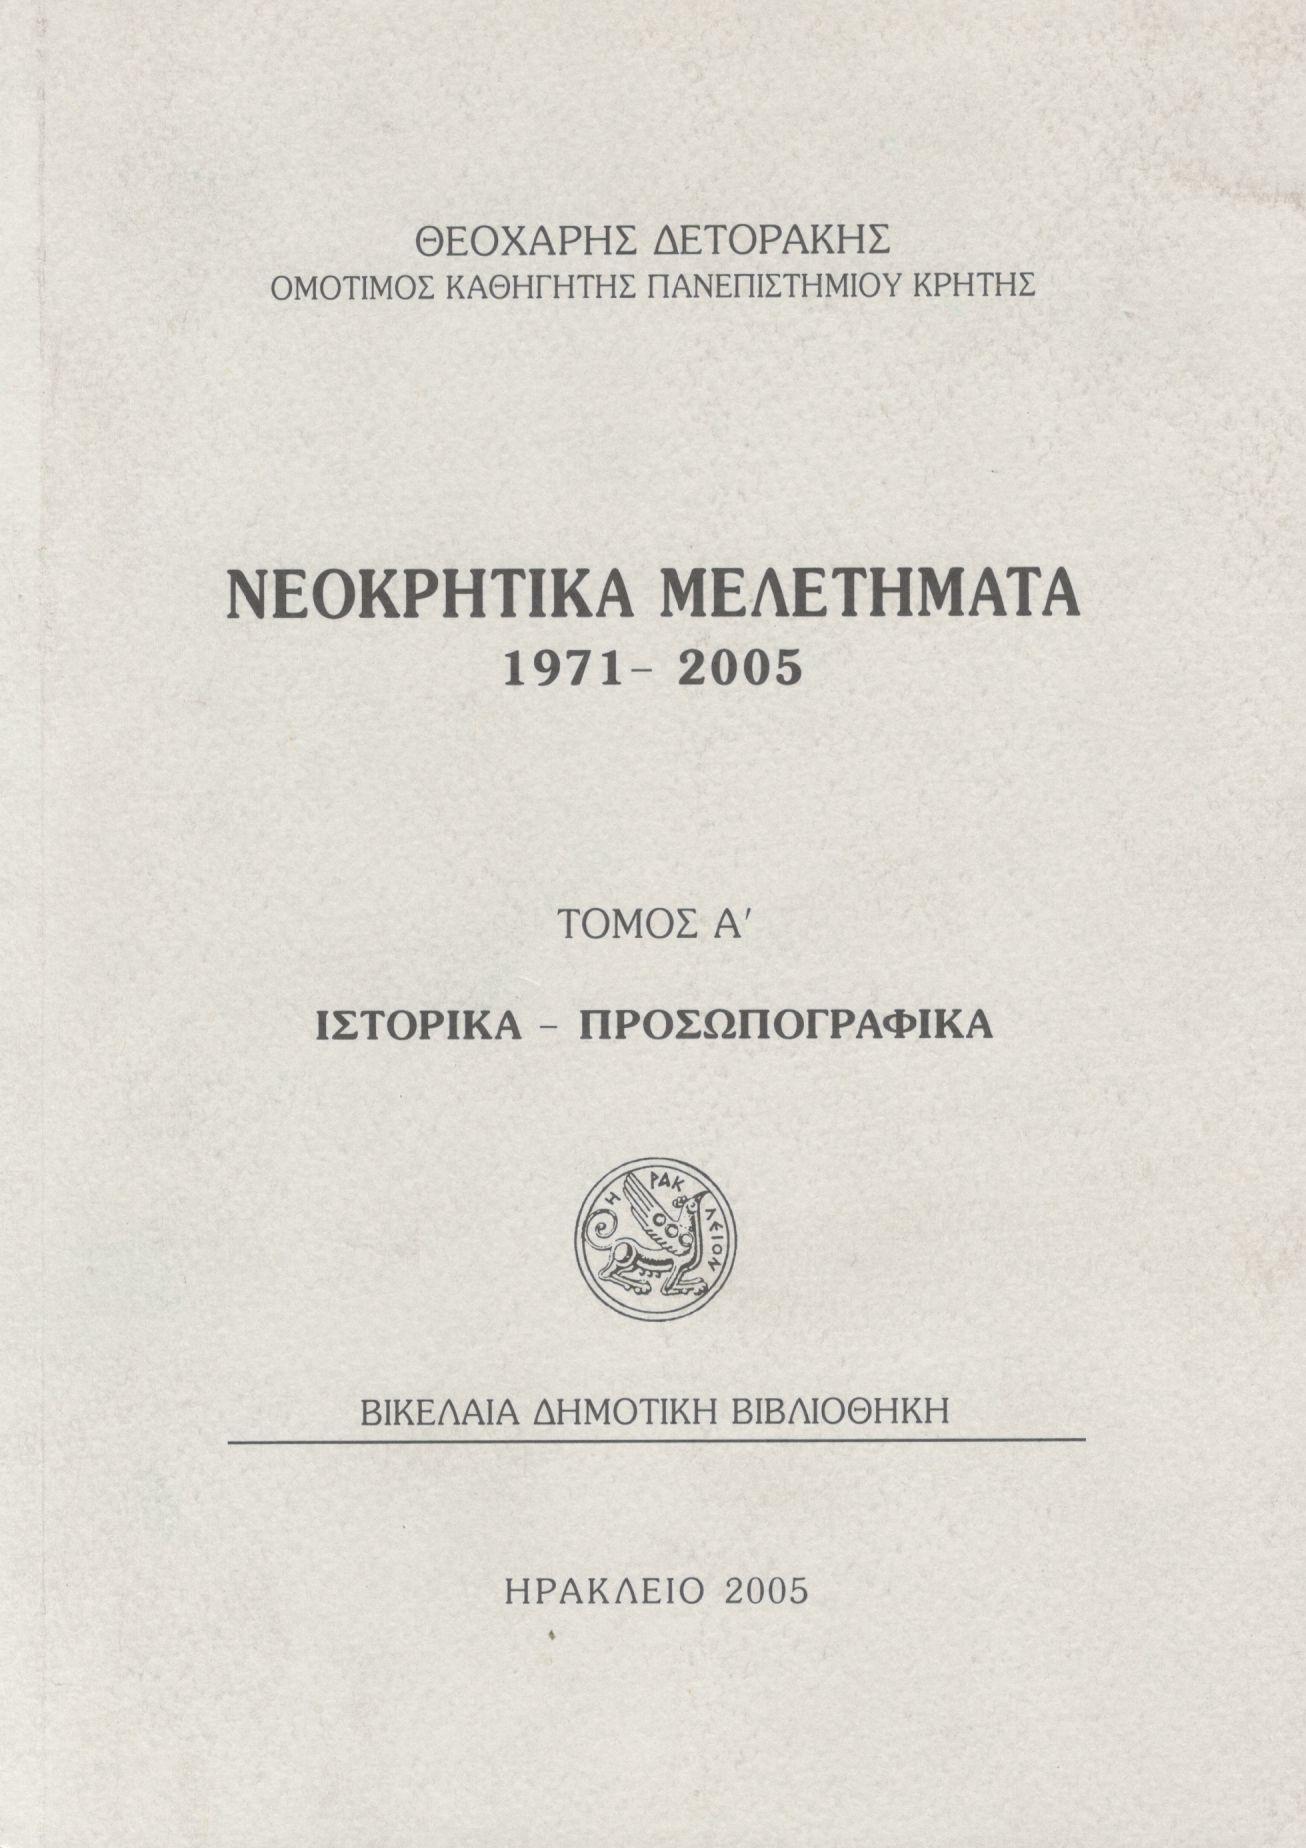 ΝΕΟΚΡΗΤΙΚΑ ΜΕΛΕΤΗΜΑΤΑ 1971-2005 (ΠΡΩΤΟΣ ΤΟΜΟΣ)